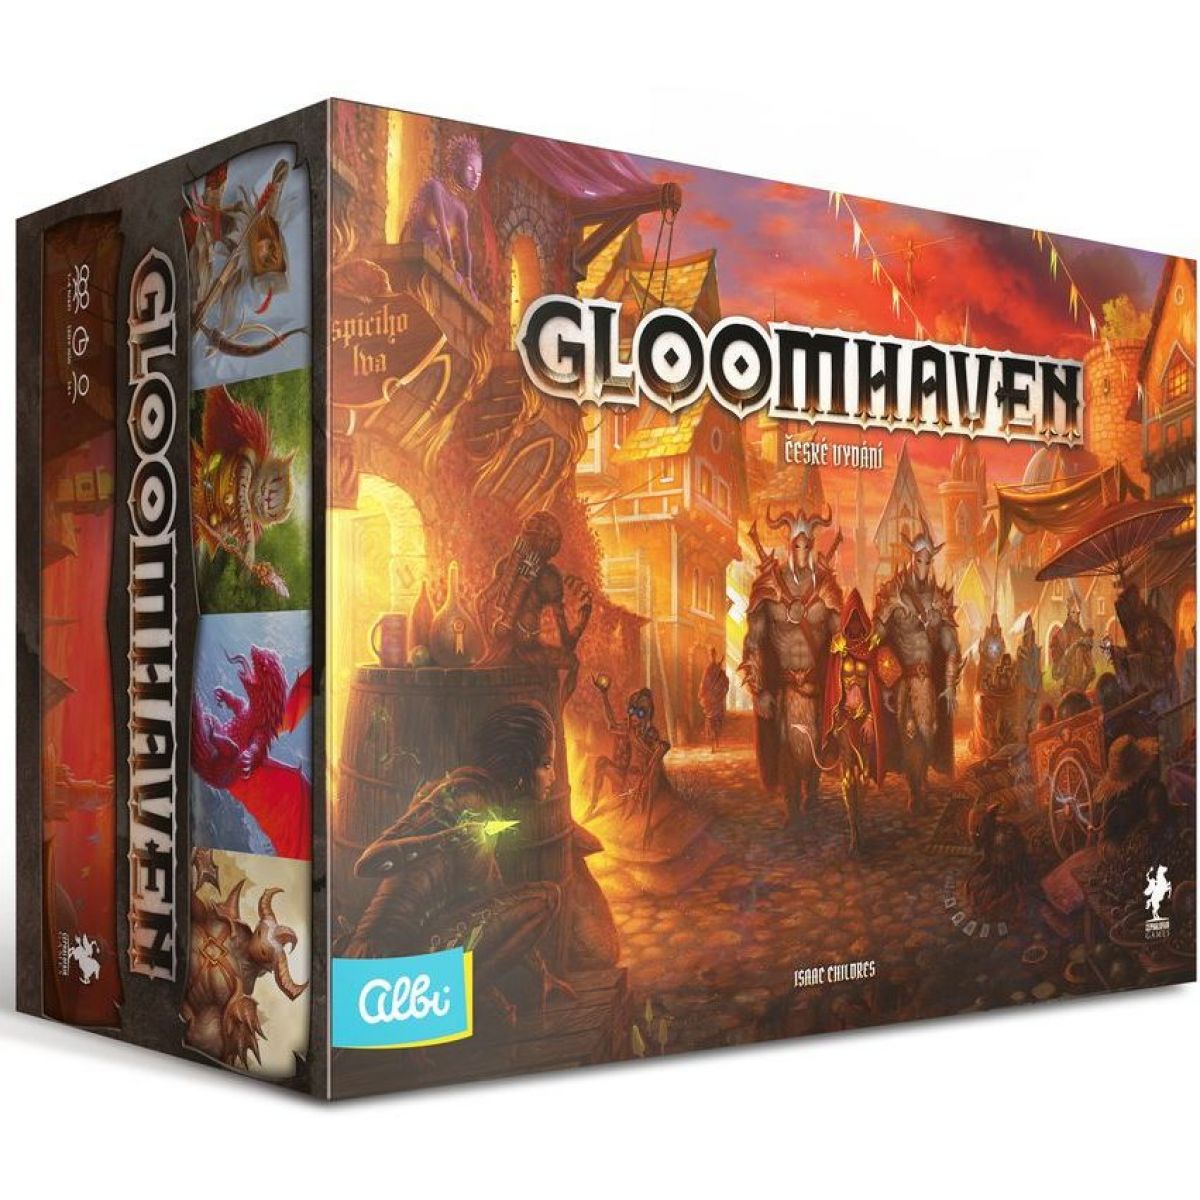 Gloomhaven CZ